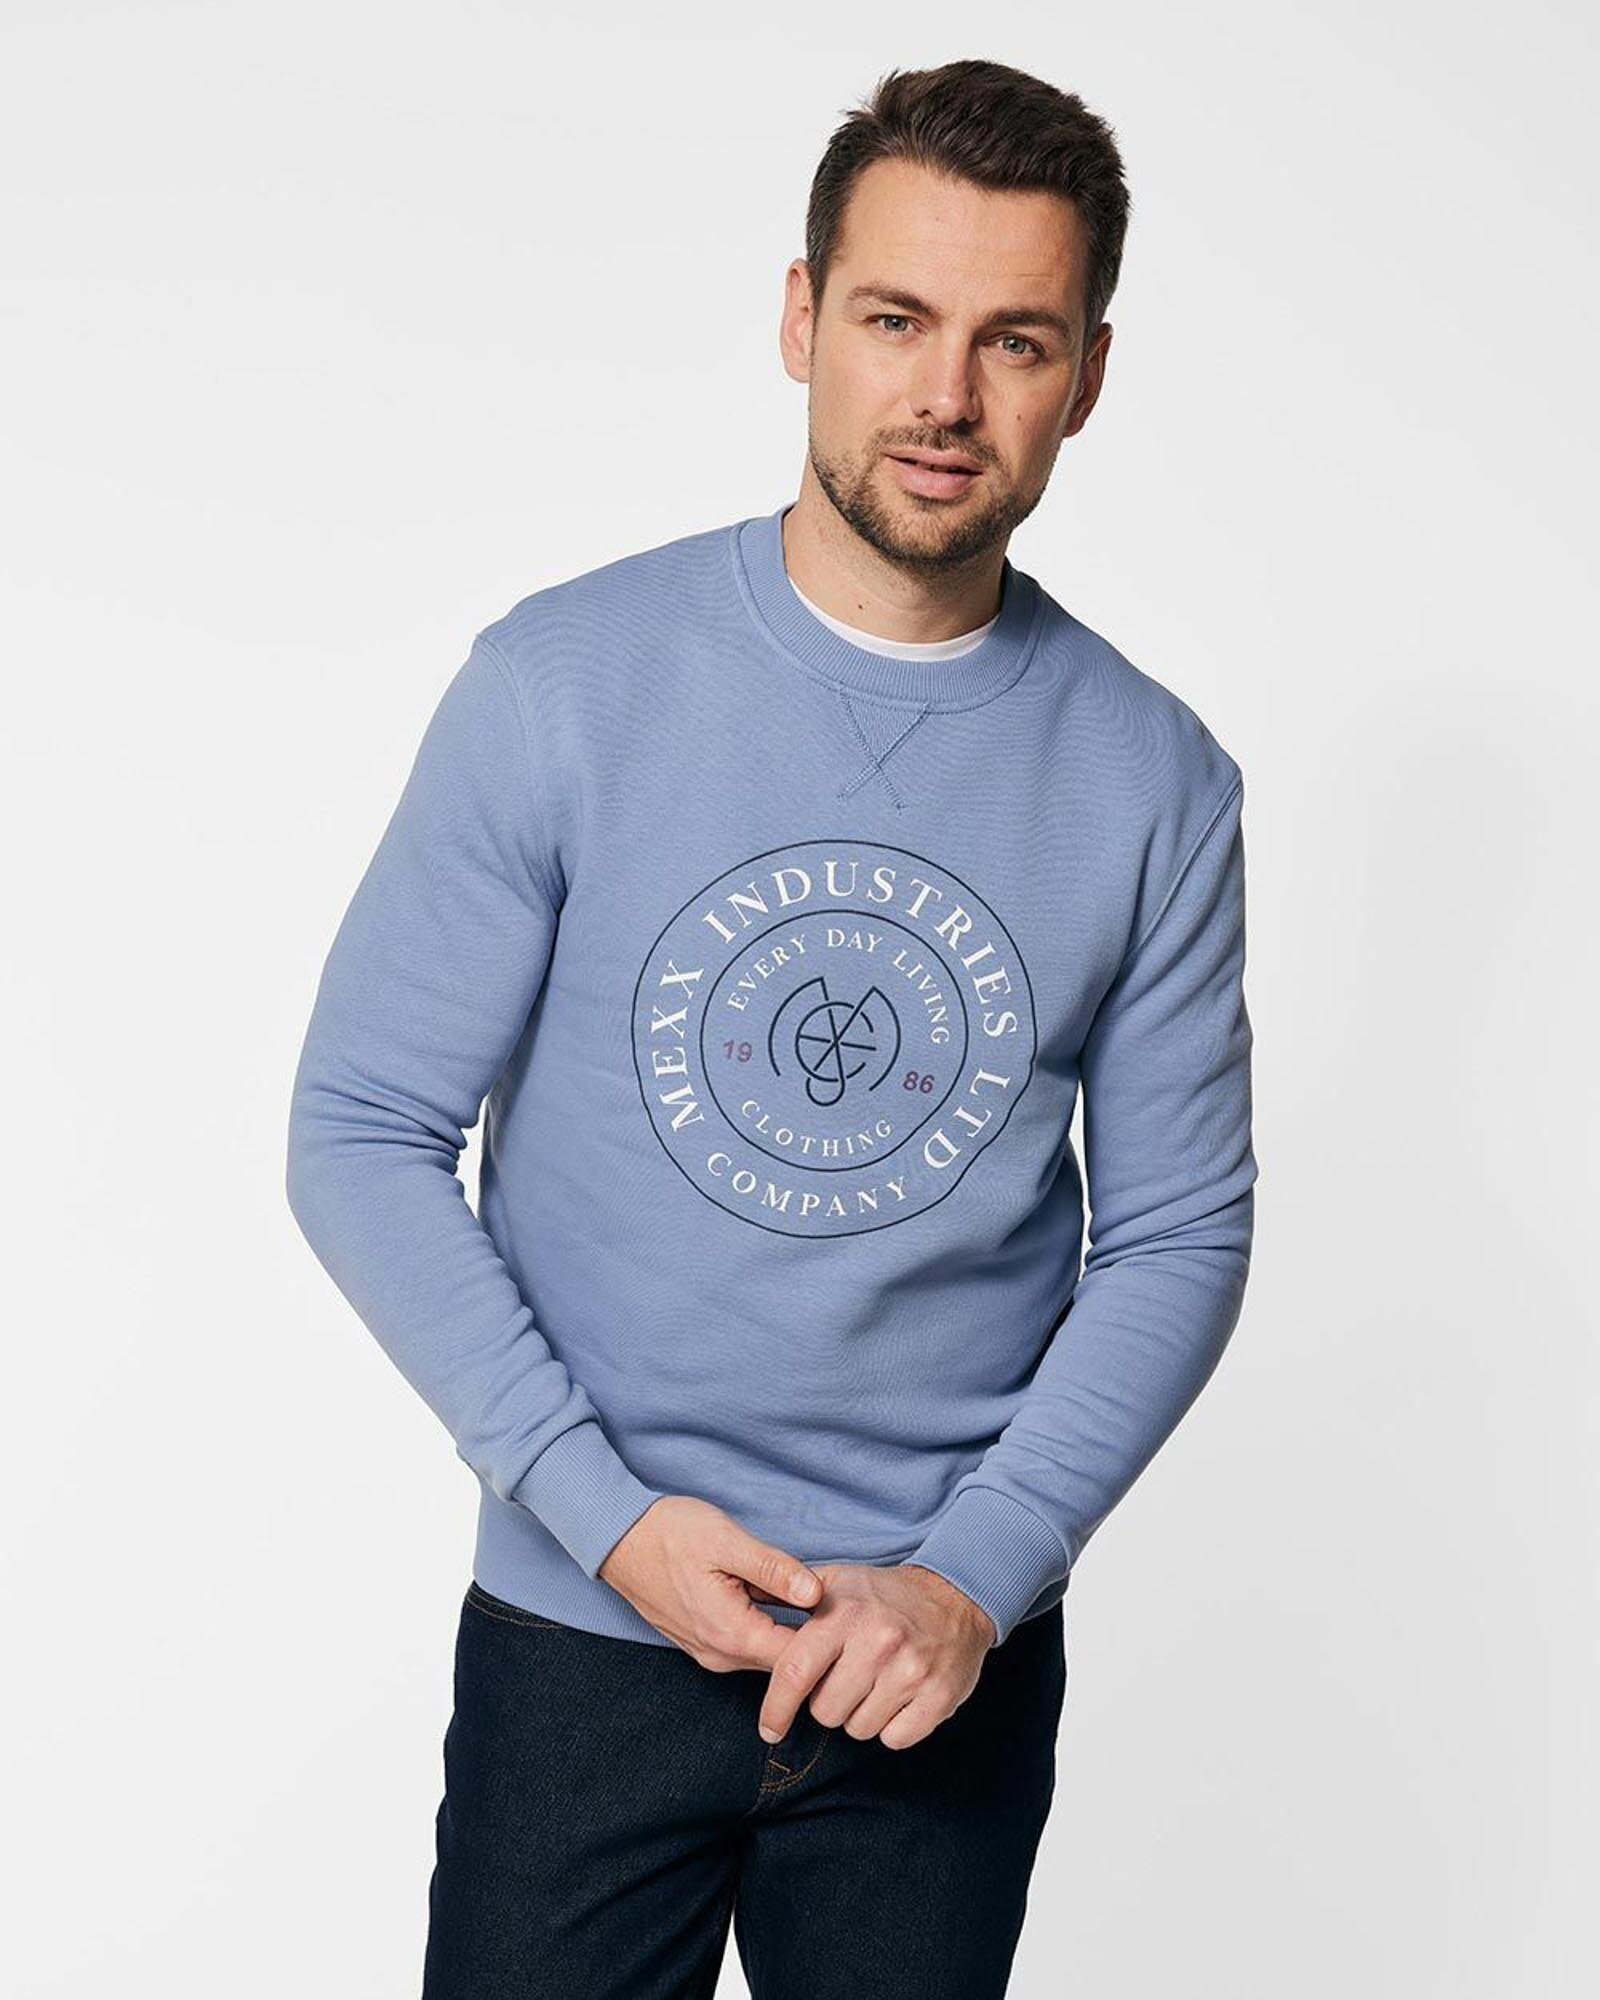 Mexx Crew Neck Sweatshirt With Print Mannen - Denim Blauw - Maat XL